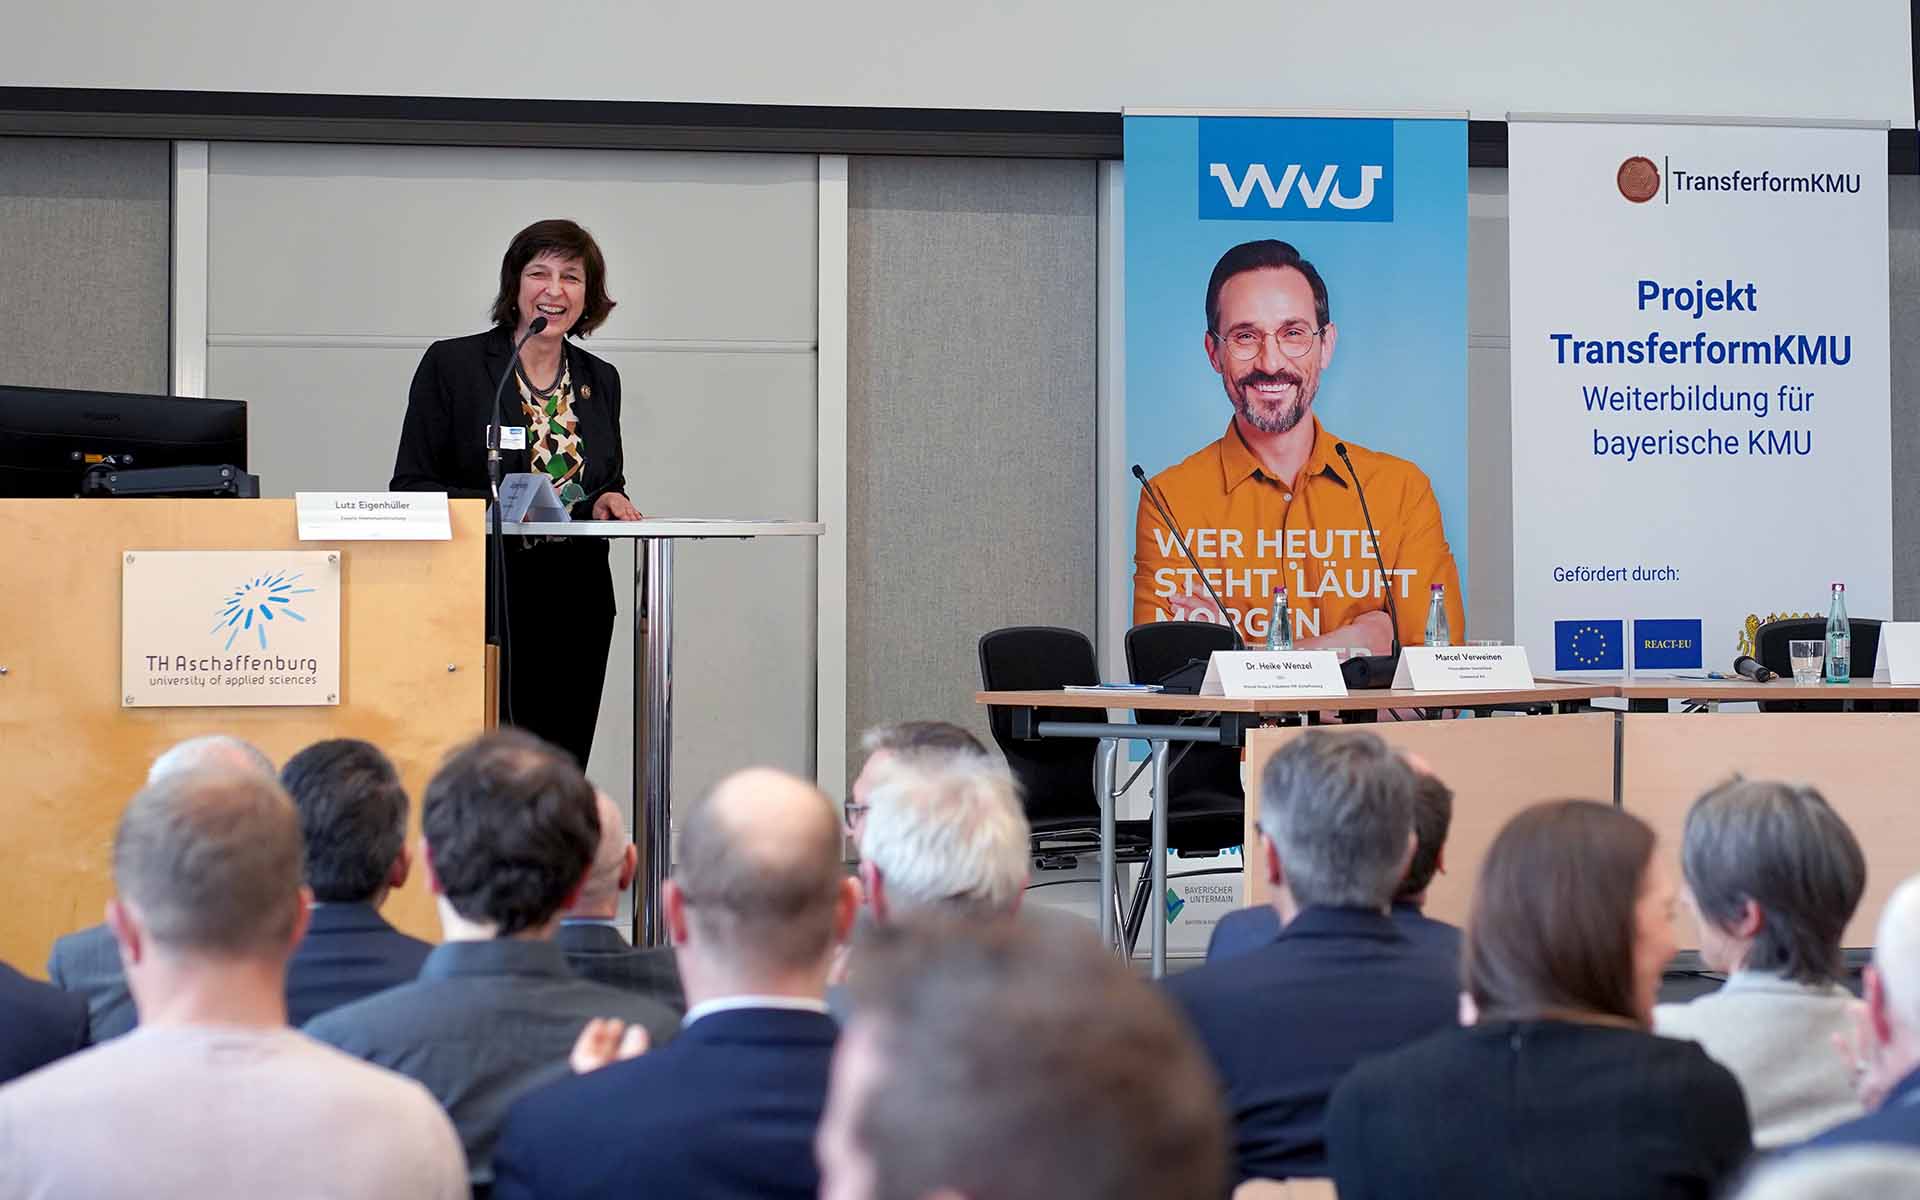 Die TH-Präsidentin steht lächelnd am Rednerpult mit Mikrophon. Das sitzende Publikum ist von hinten zu sehen. Rechts hängt ein Plakat des WVU mit dem Porträt eines jungen Mannes in orangefarbenen Hemd.